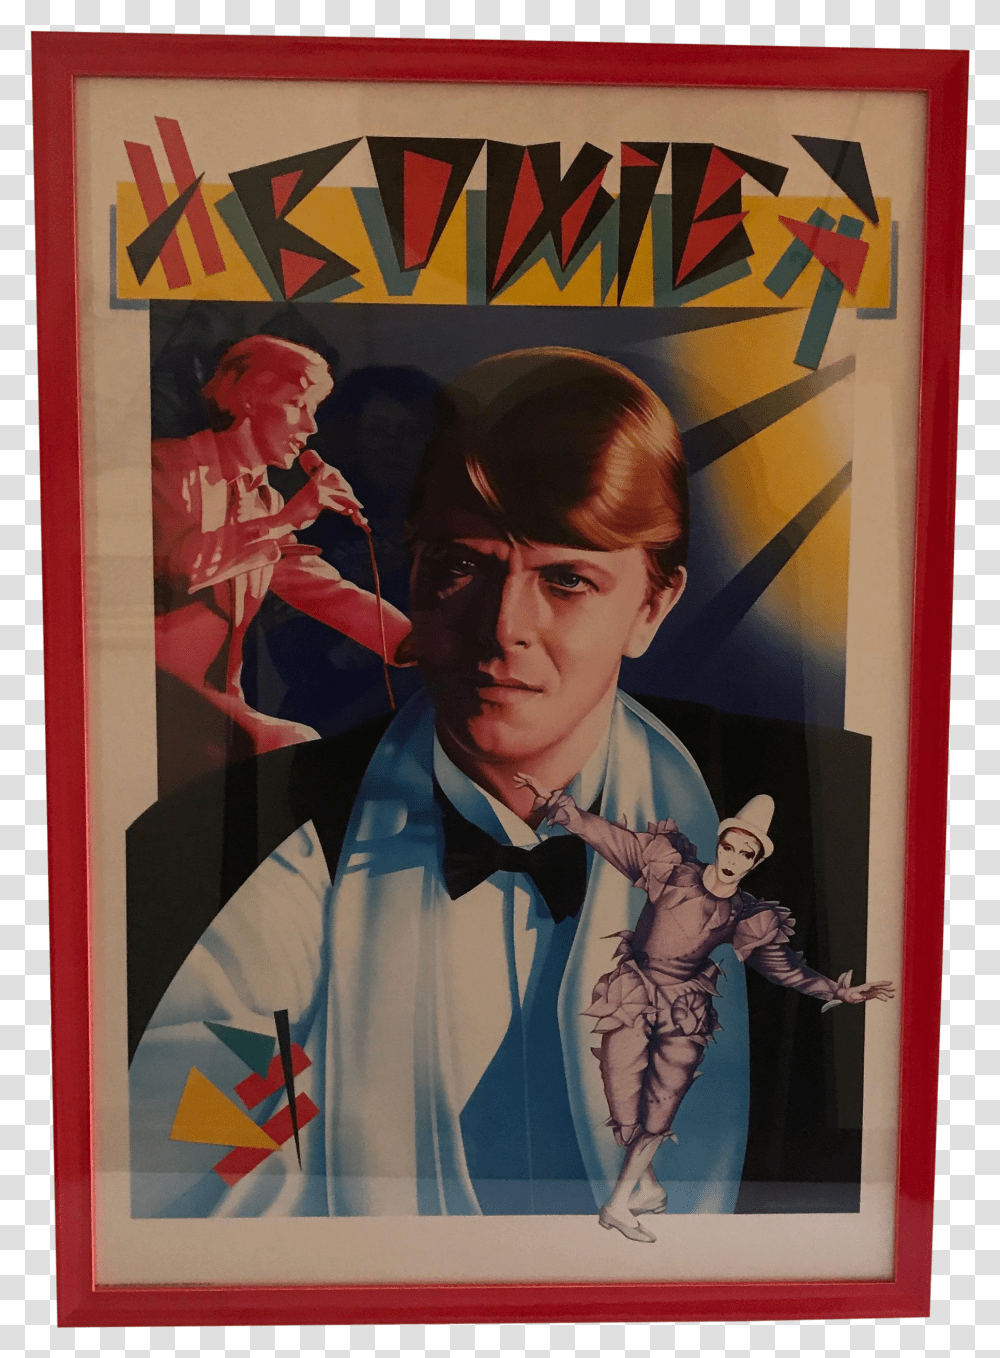 1980s Vintage Framed David Bowie Poster For Sale Poster Transparent Png